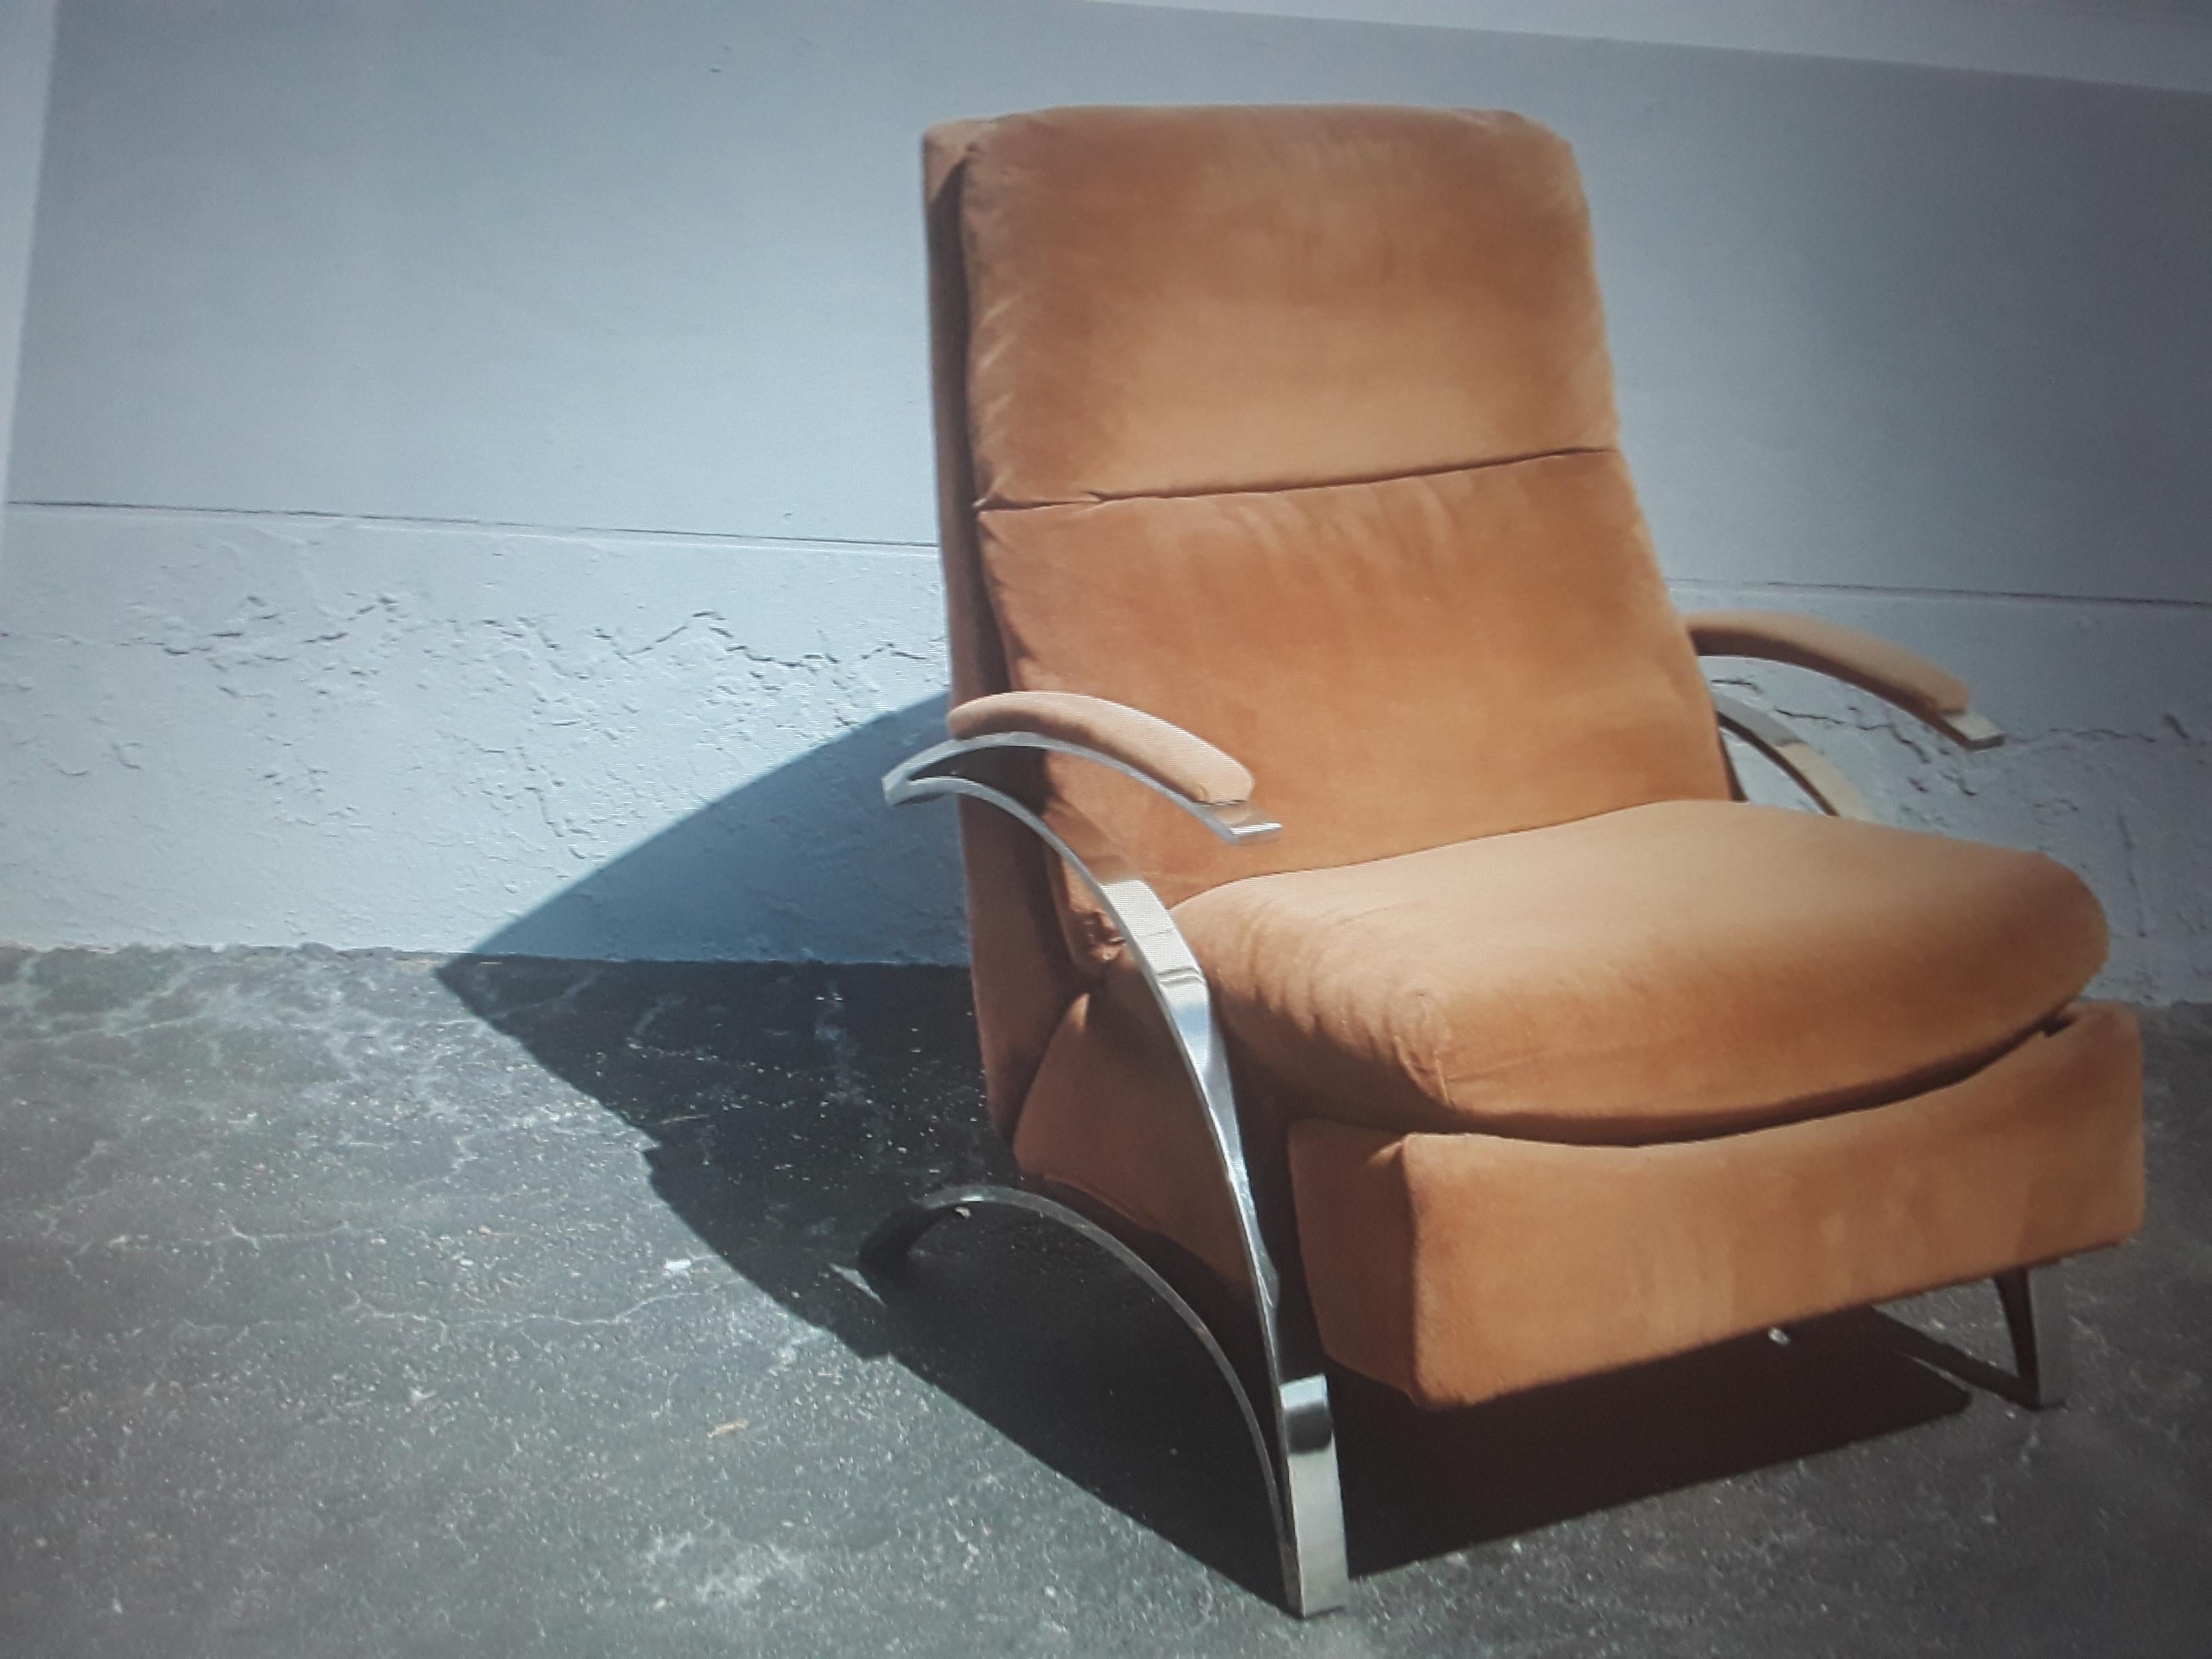 1970's Modern Plüsch Braun mit Chrom Barcalounger Recliner / Lounge Chair. Sehr bequem und in geöffnetem Zustand ist die Länge 63 Zoll.